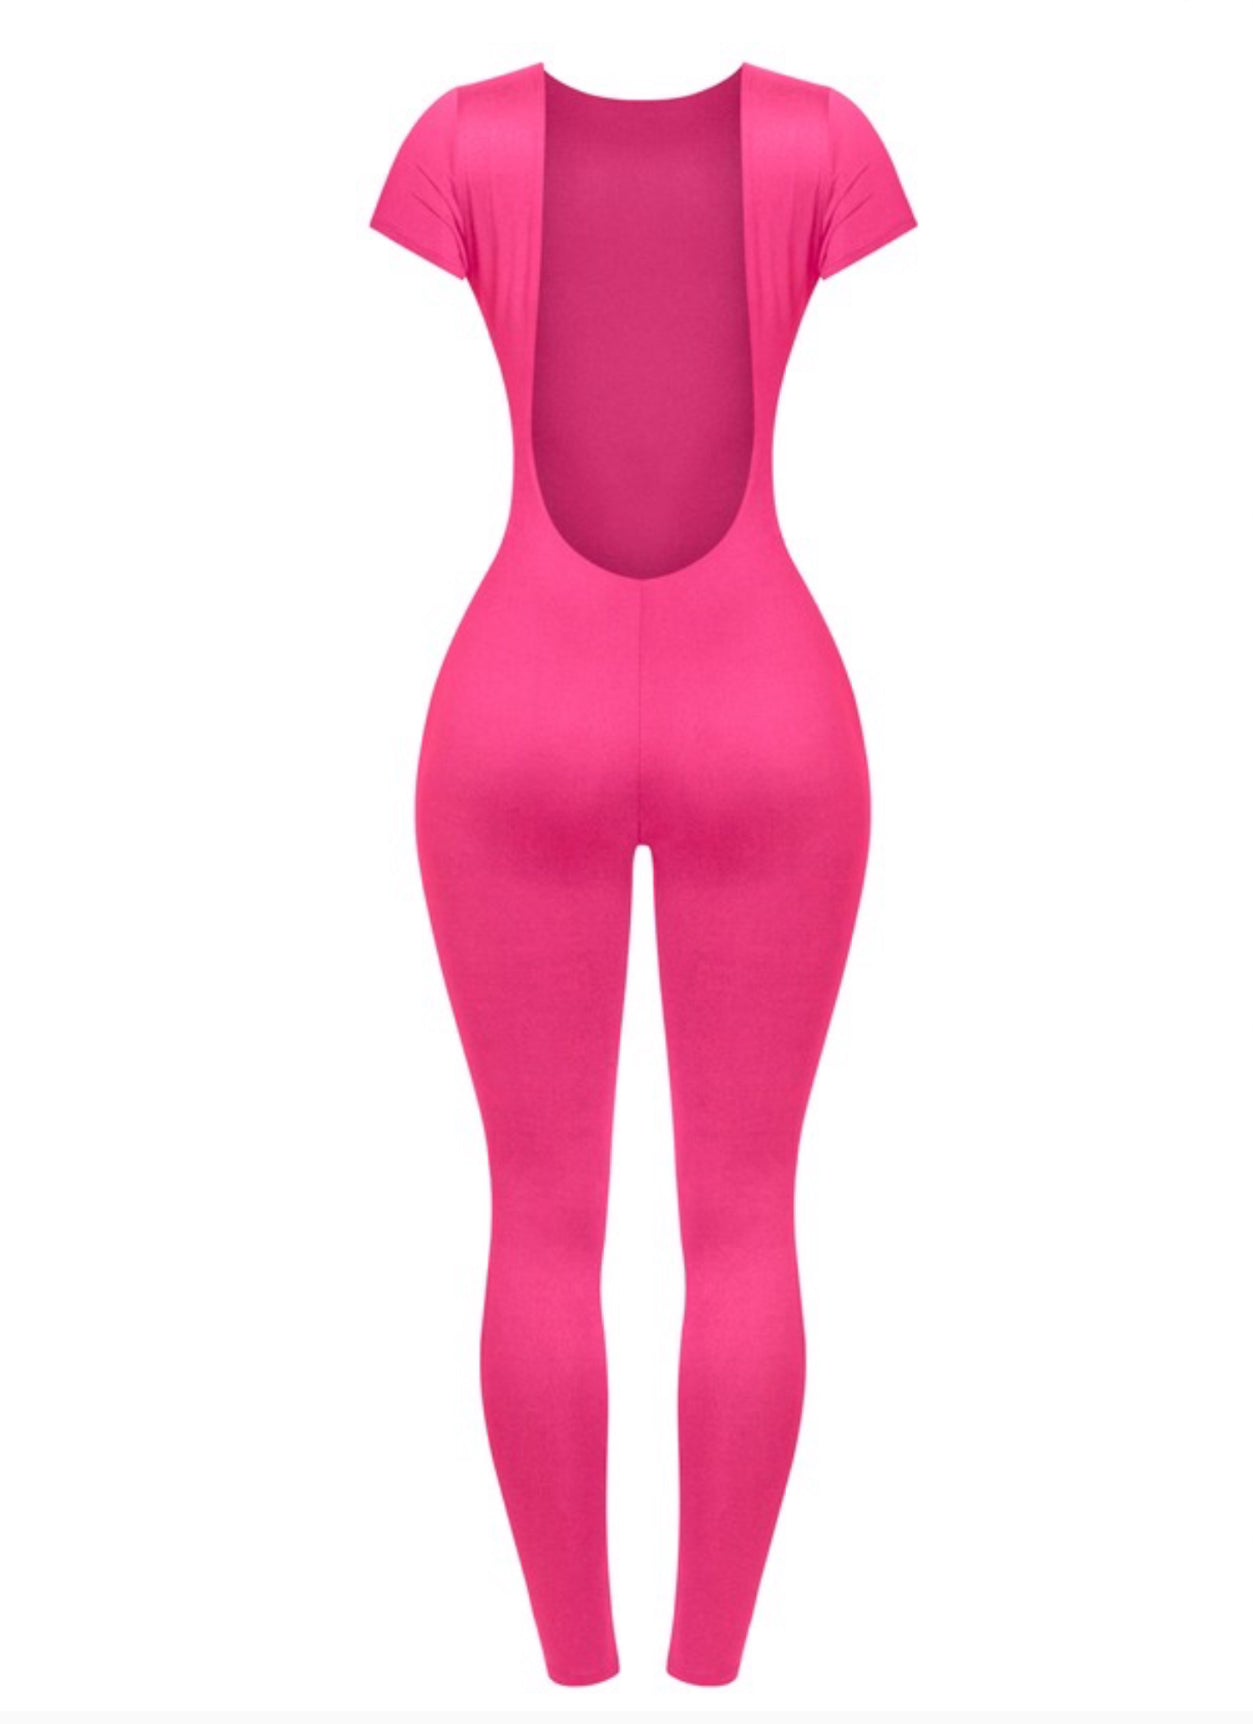 Show it off Jumpsuit - Pink